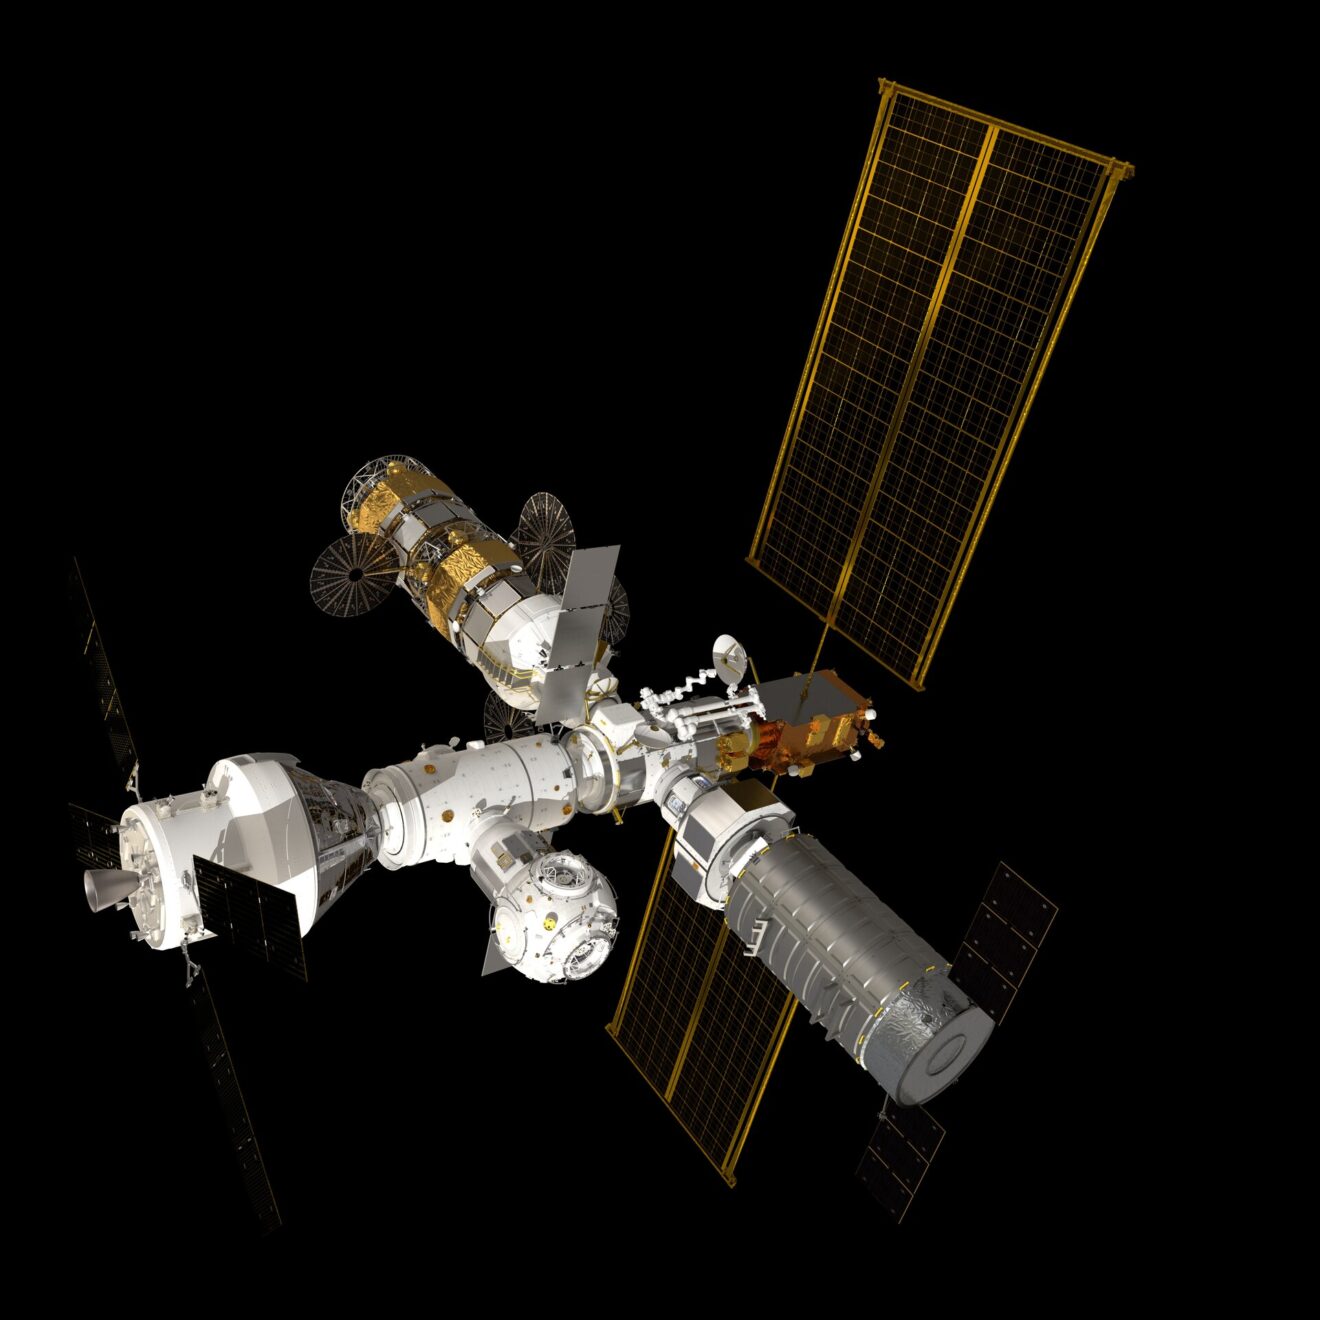 DARPA lanceert LunA-10 om ontluikende cislunaire- en maaneconomie een commerciële boost te geven